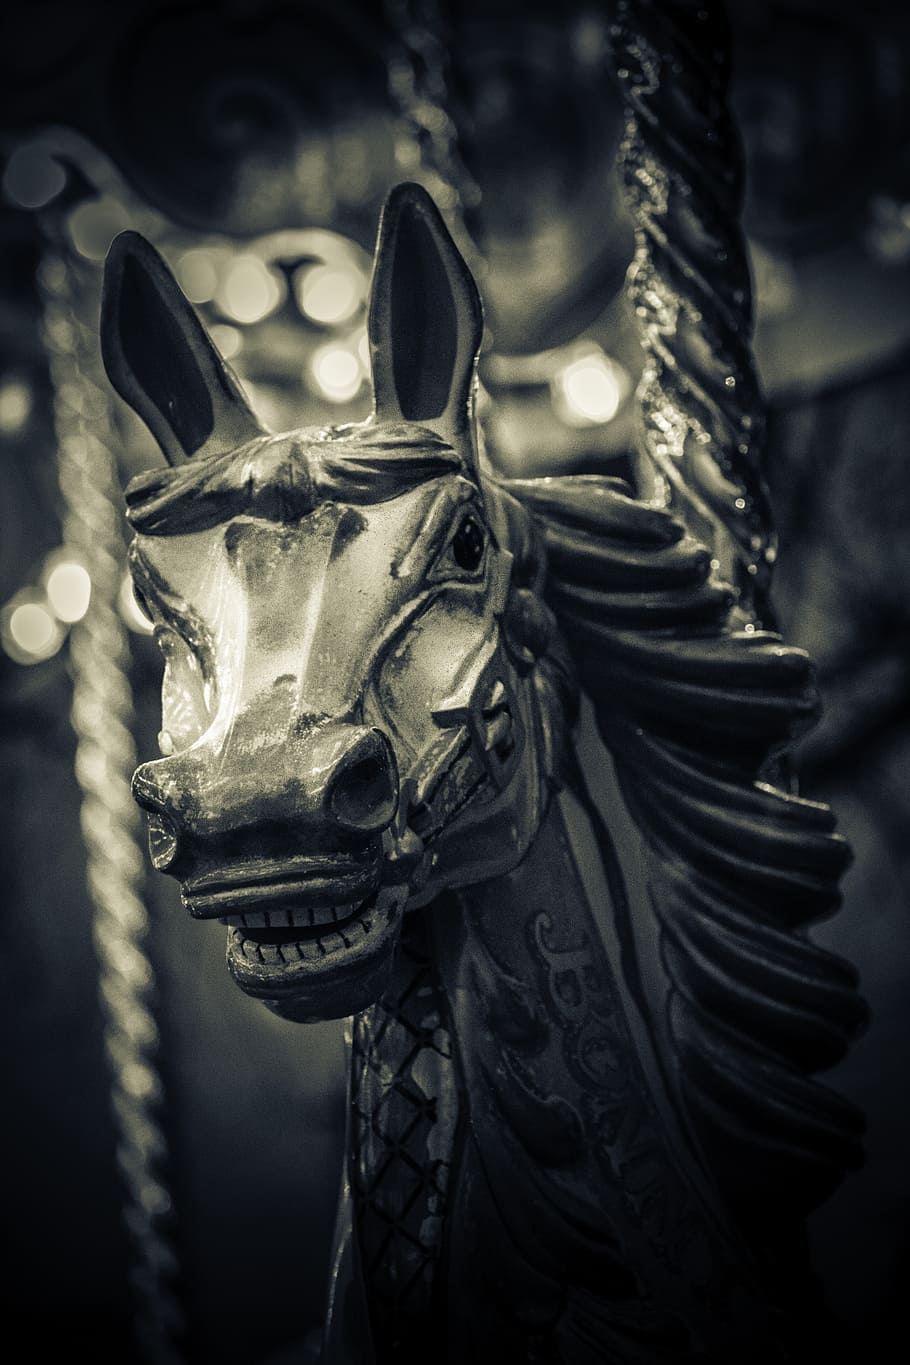 caballo de carrusel, espeluznante, blanco y negro, rotonda, aterrador, escalofriante, diversión, carnaval, carrusel, oscuro